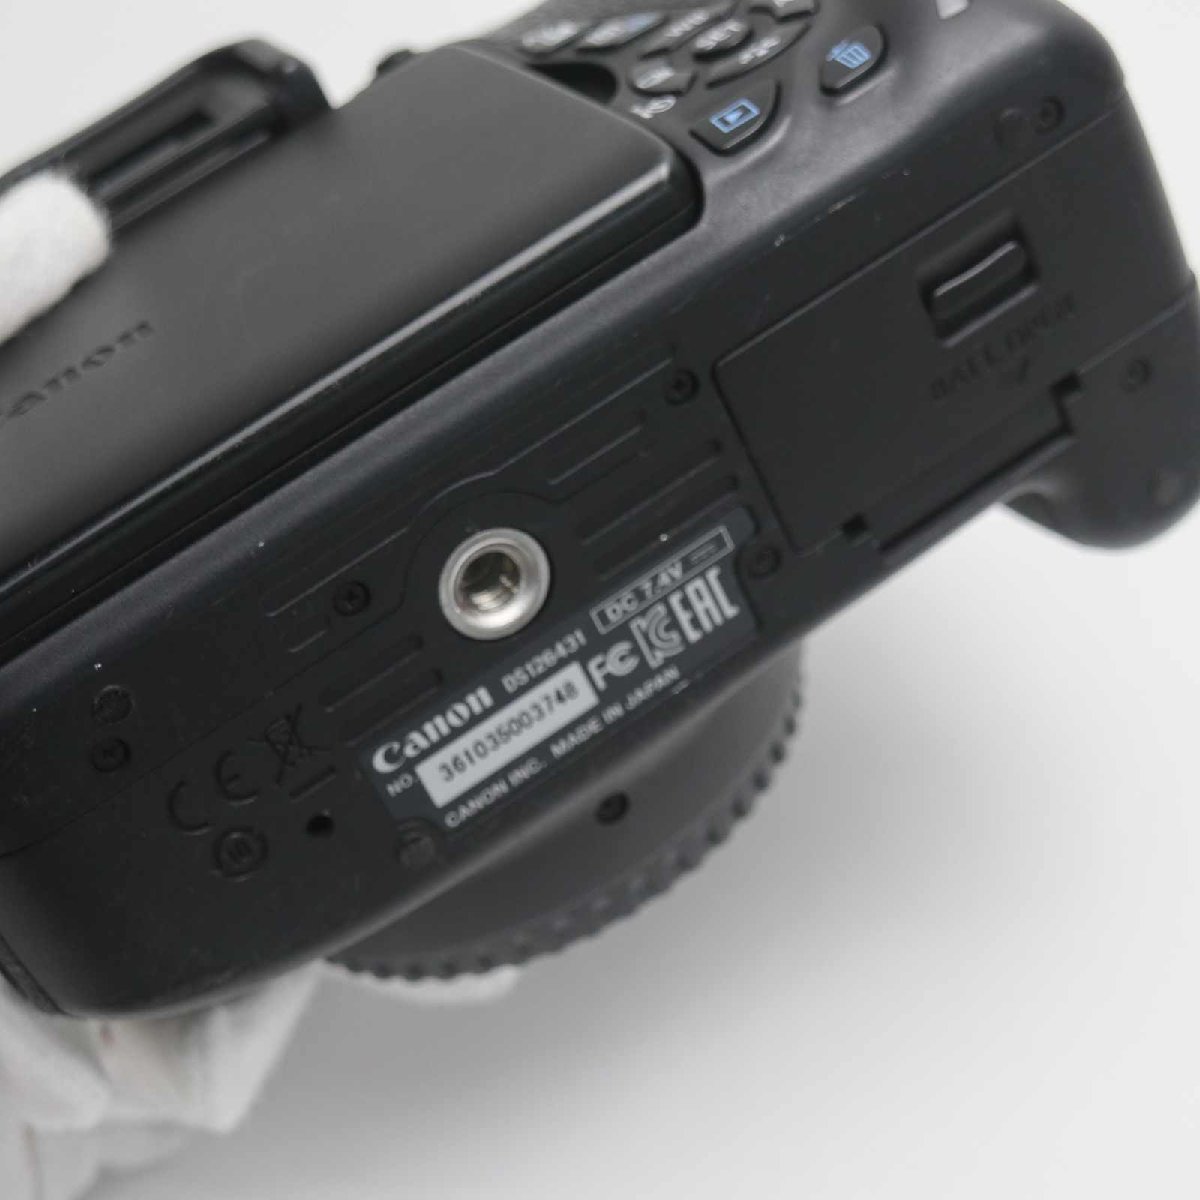 超美品 EOS Kiss X7i ブラック 即日発送 デジタル一眼 Canon 本体 あす